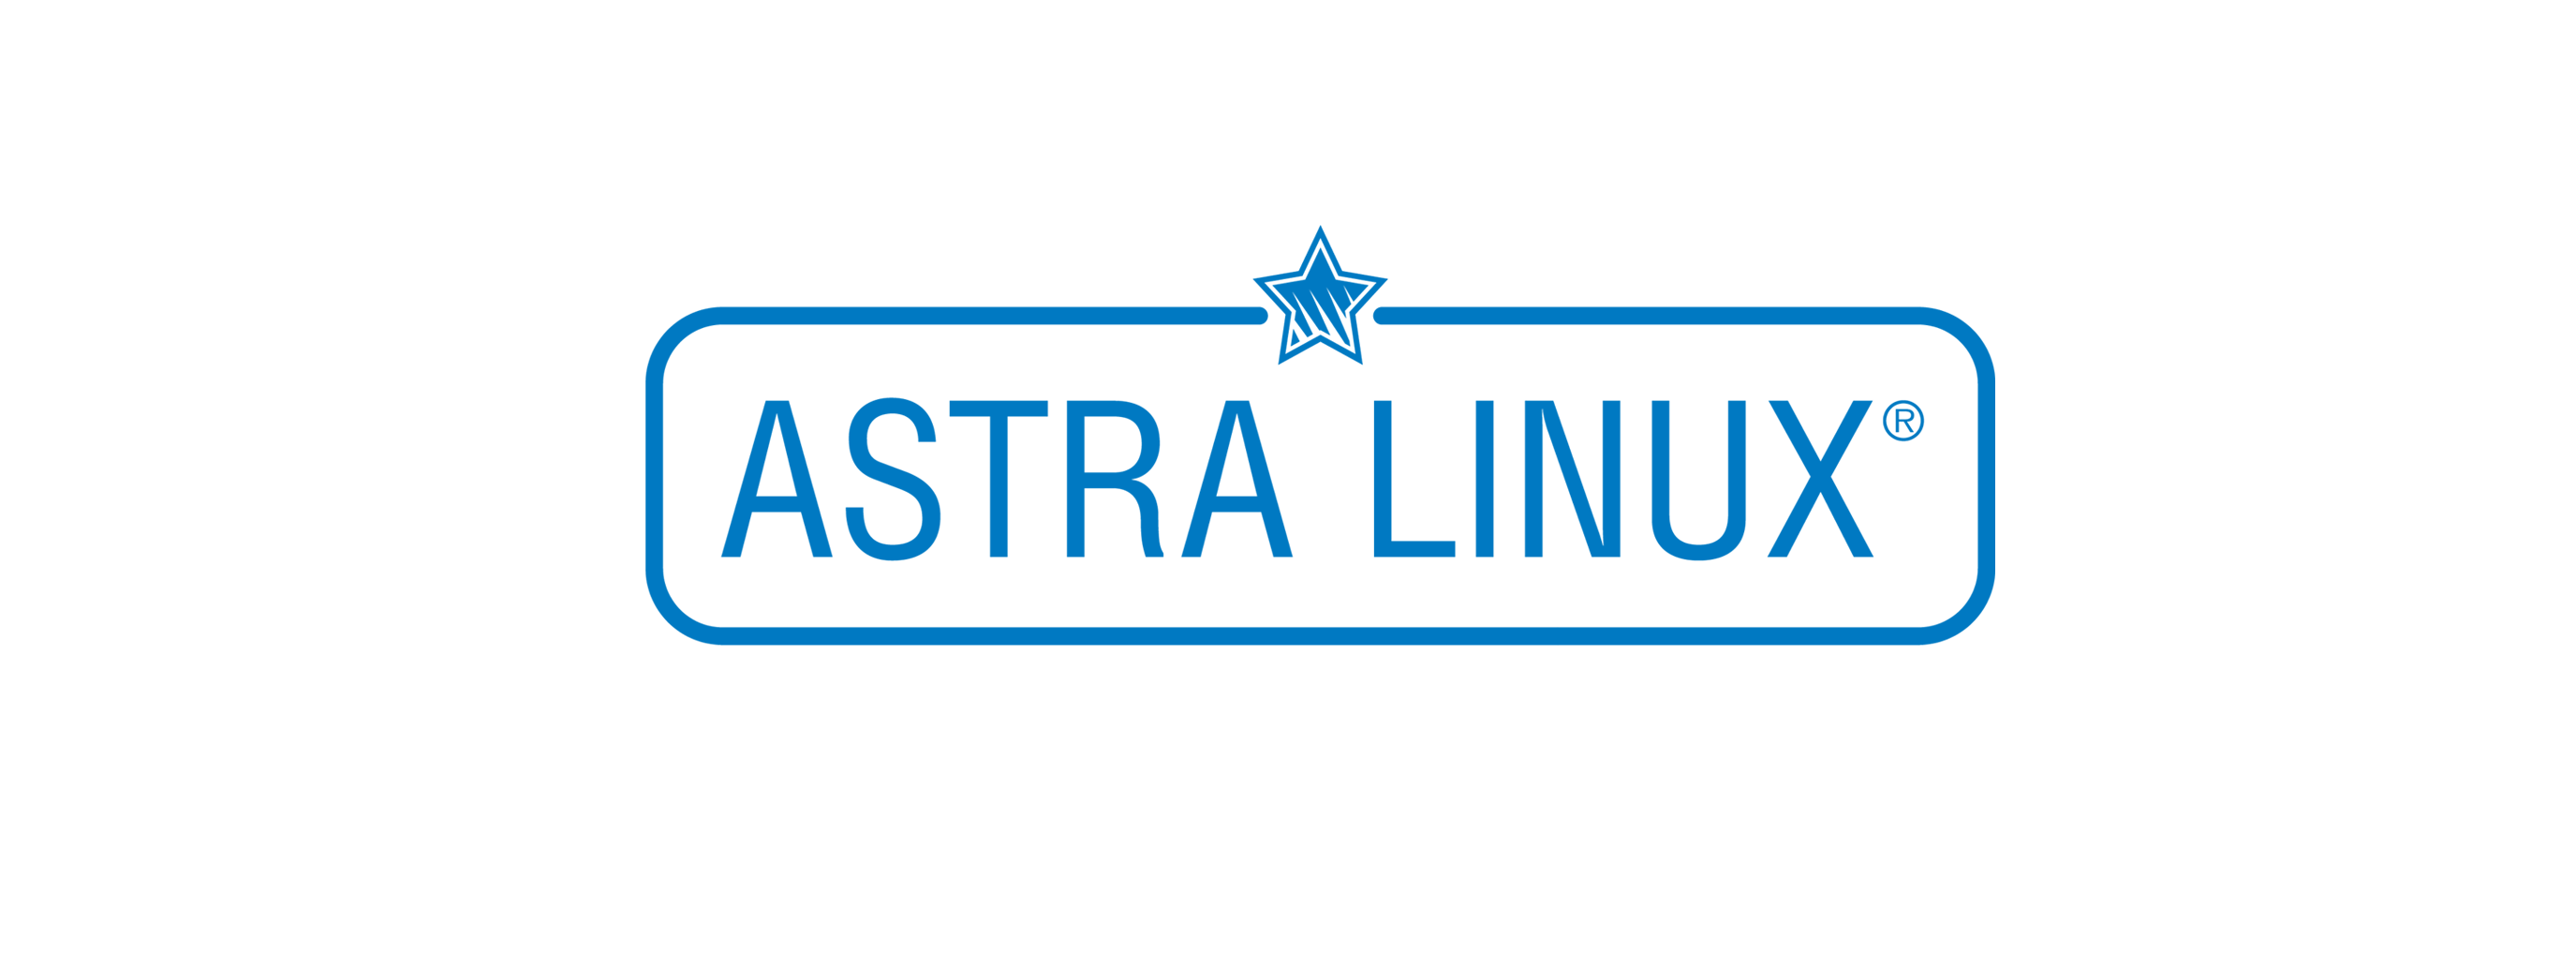 Лицензия РусБИТех Astra Linux Special Edition (очередное обновление 1.7), уровень защищенности Максимальный (Смоленск), РУСБ.10015-01 (ФСТЭК), Russian, на 36 месяцев базовая лицензия для виртуального сервера, электронный ключ (OS2101X8617DIG000VS02-PO36) Astra Linux Special Edition (очередное обновление 1.7), уровень защищенности Максимальный (Смоленск) - фото 1